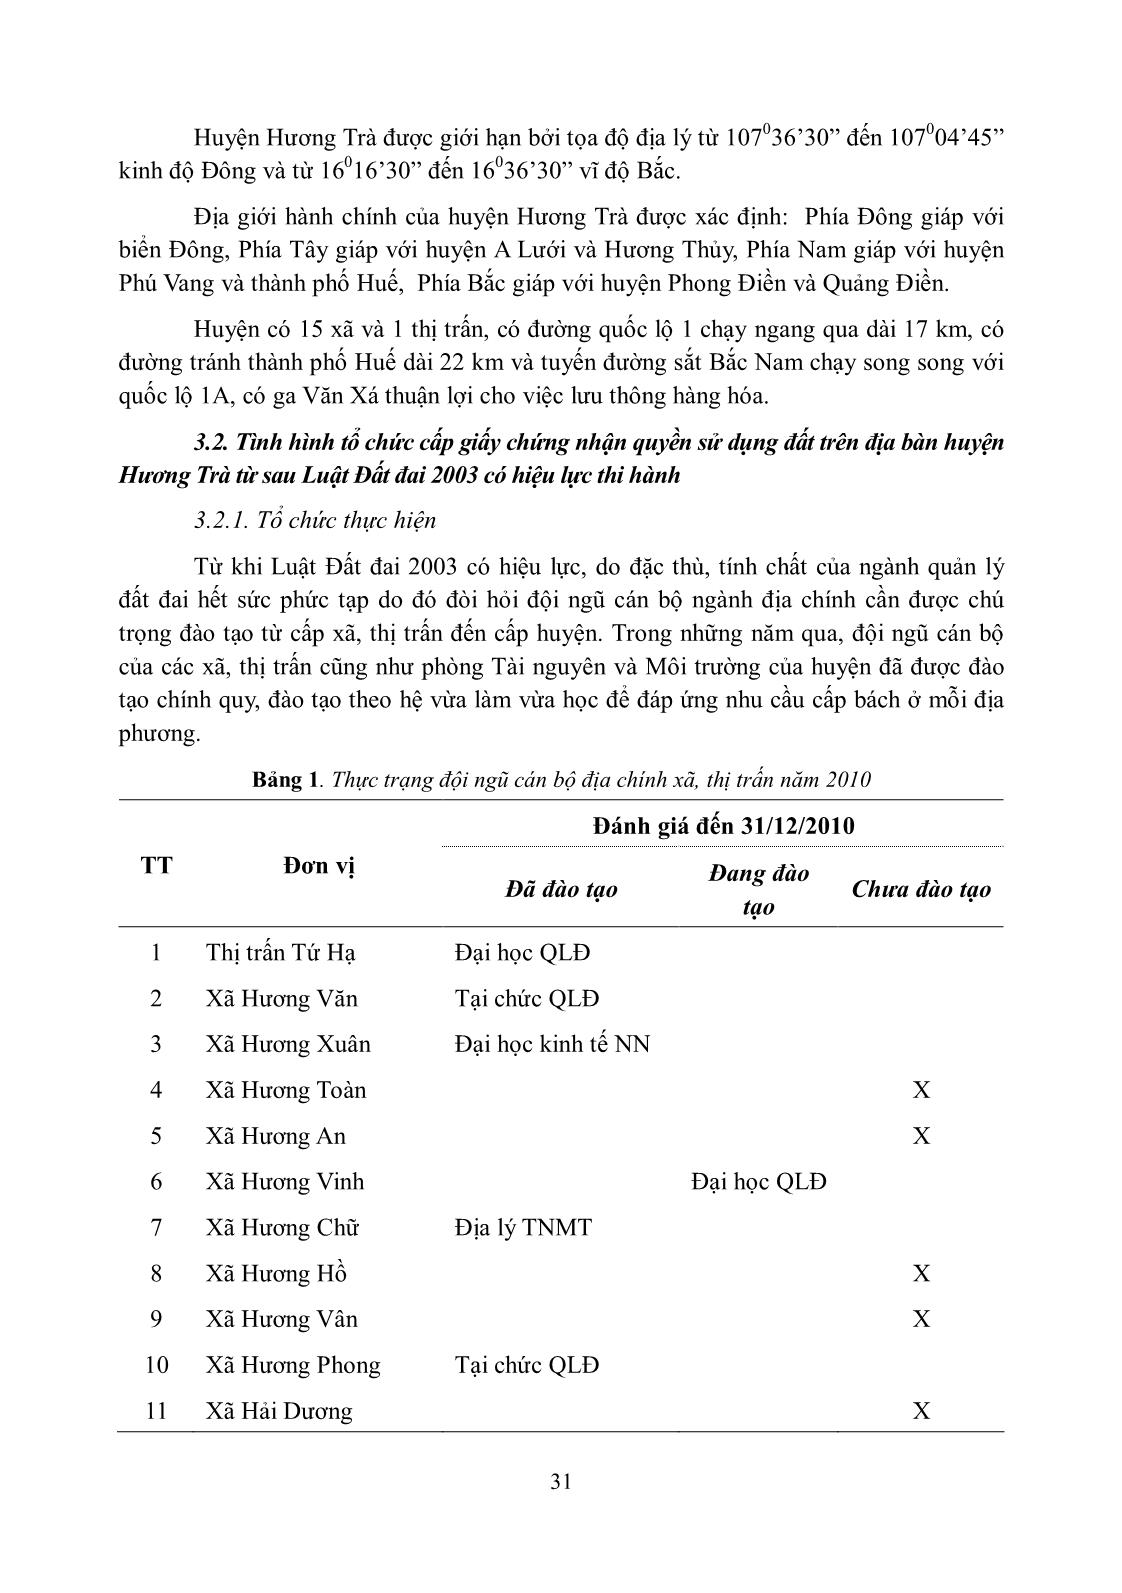 Đánh giá tình hình cấp giấy chứng nhận quyền sử dụng đất sau luật đất đai từ 2004 đến 2010 tại huyện Hương Trà, tỉnh Thừa Thiên Huế trang 3